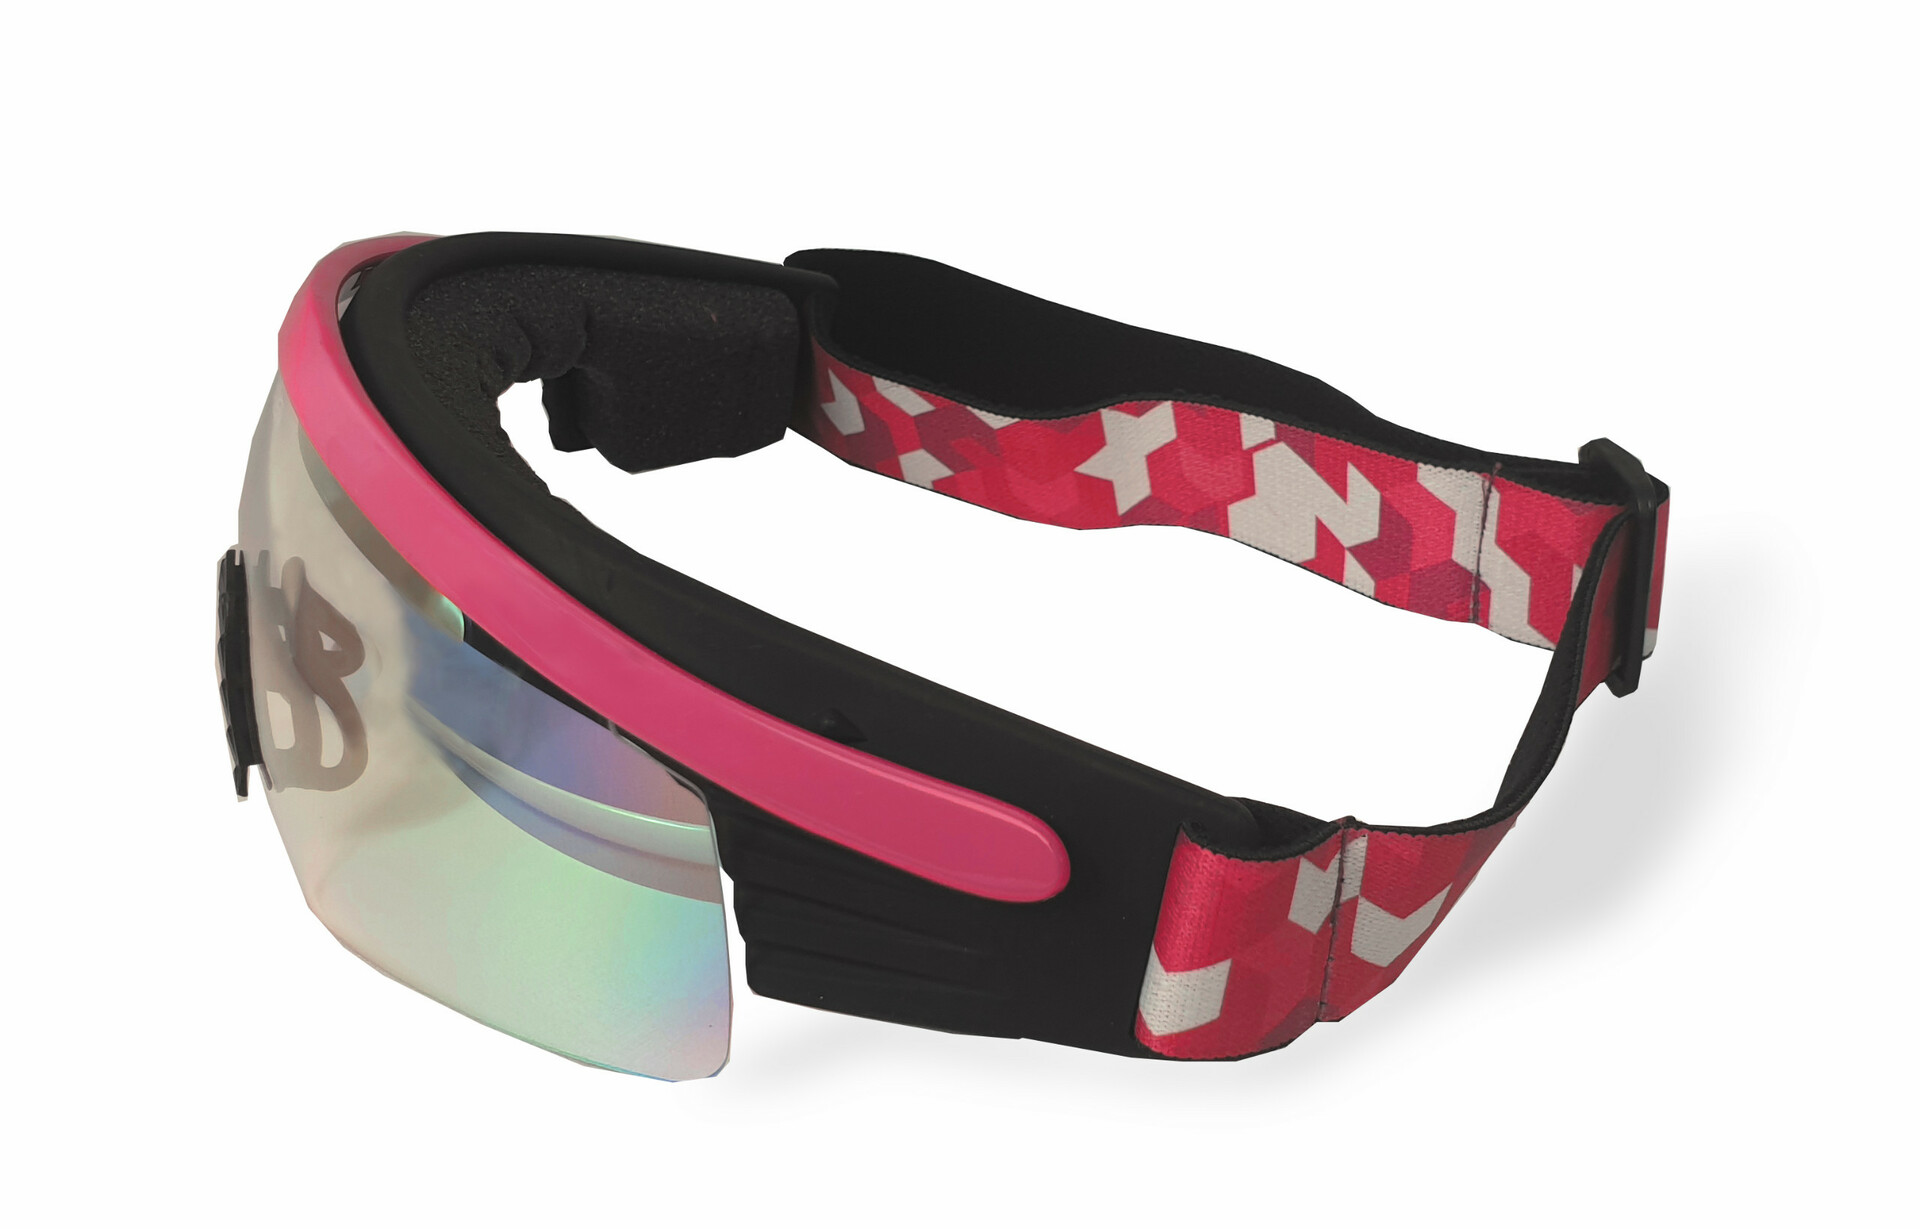 Běžkařské a biatlonové brýle Haven, odklopitelné, růžové